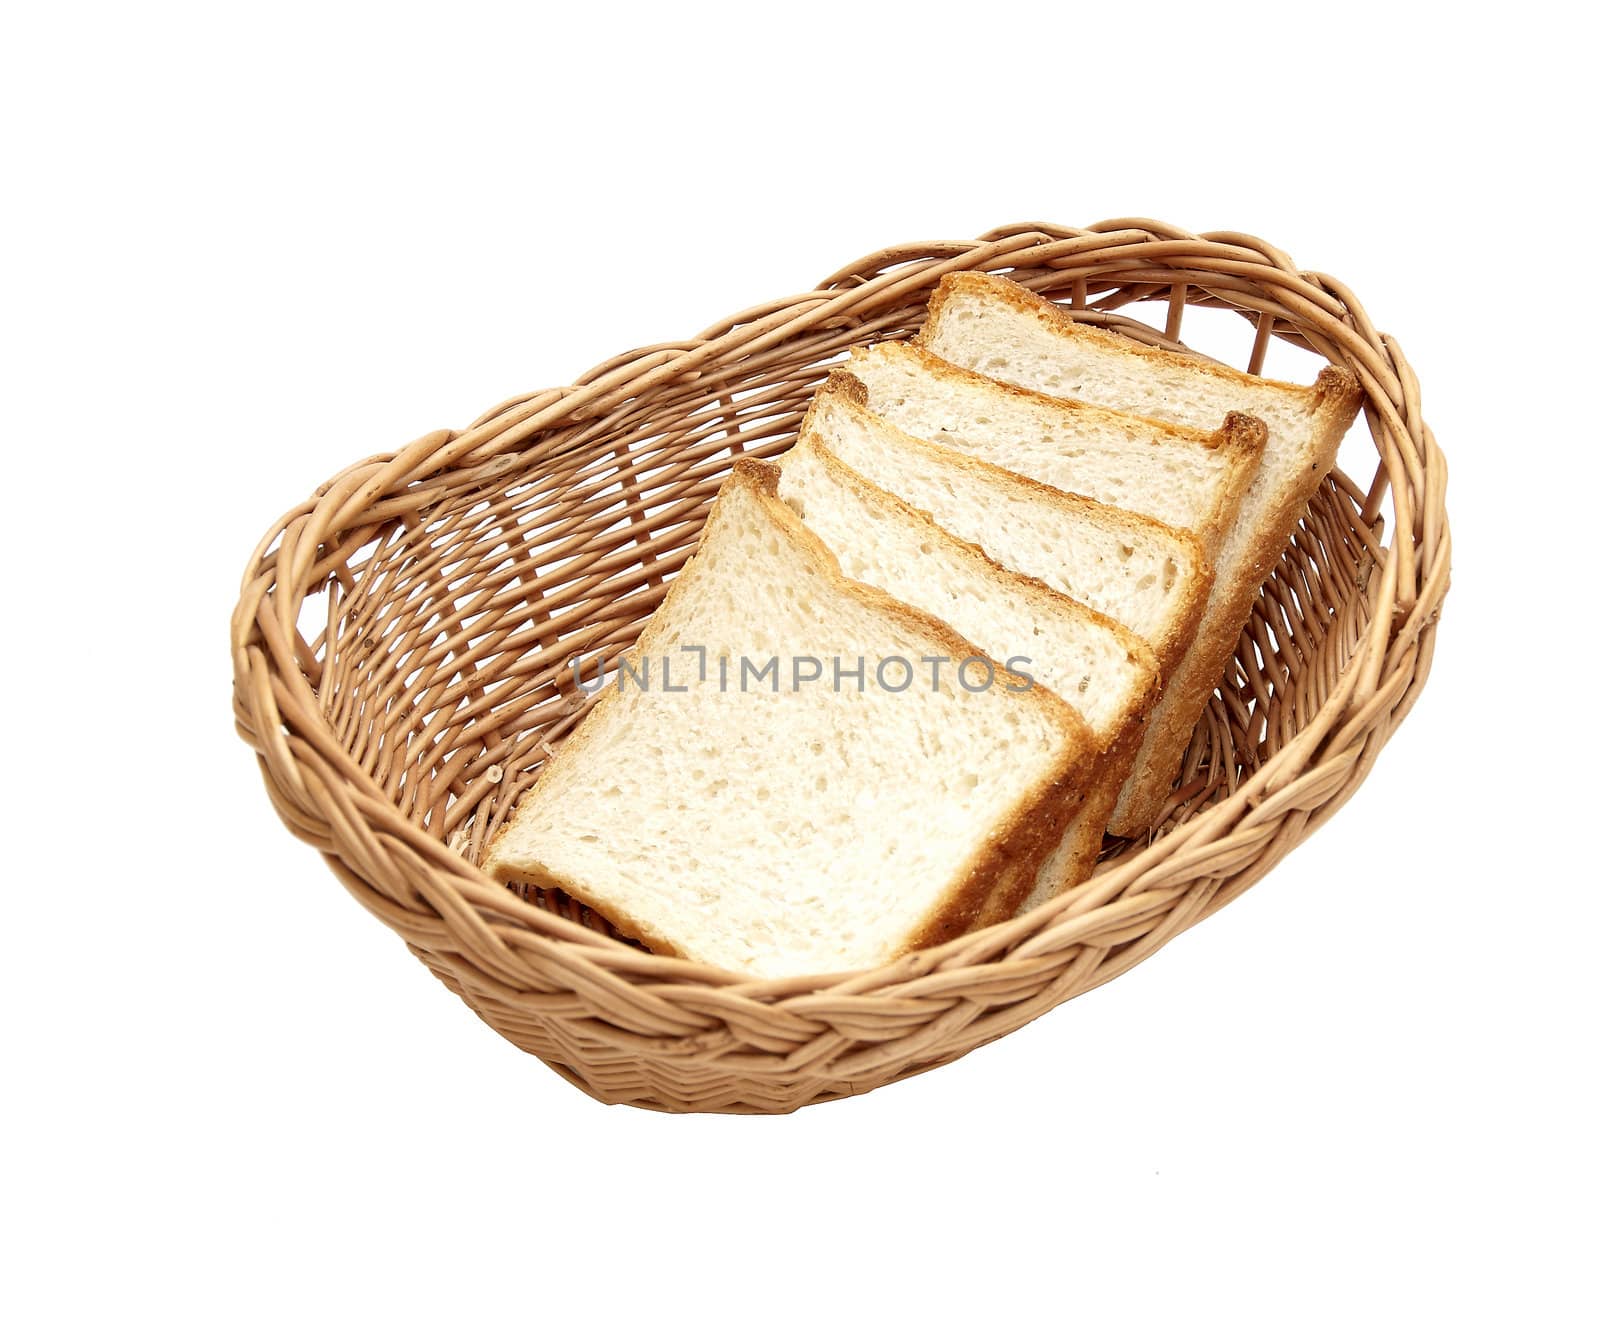 bread in a wicker basket by adam121